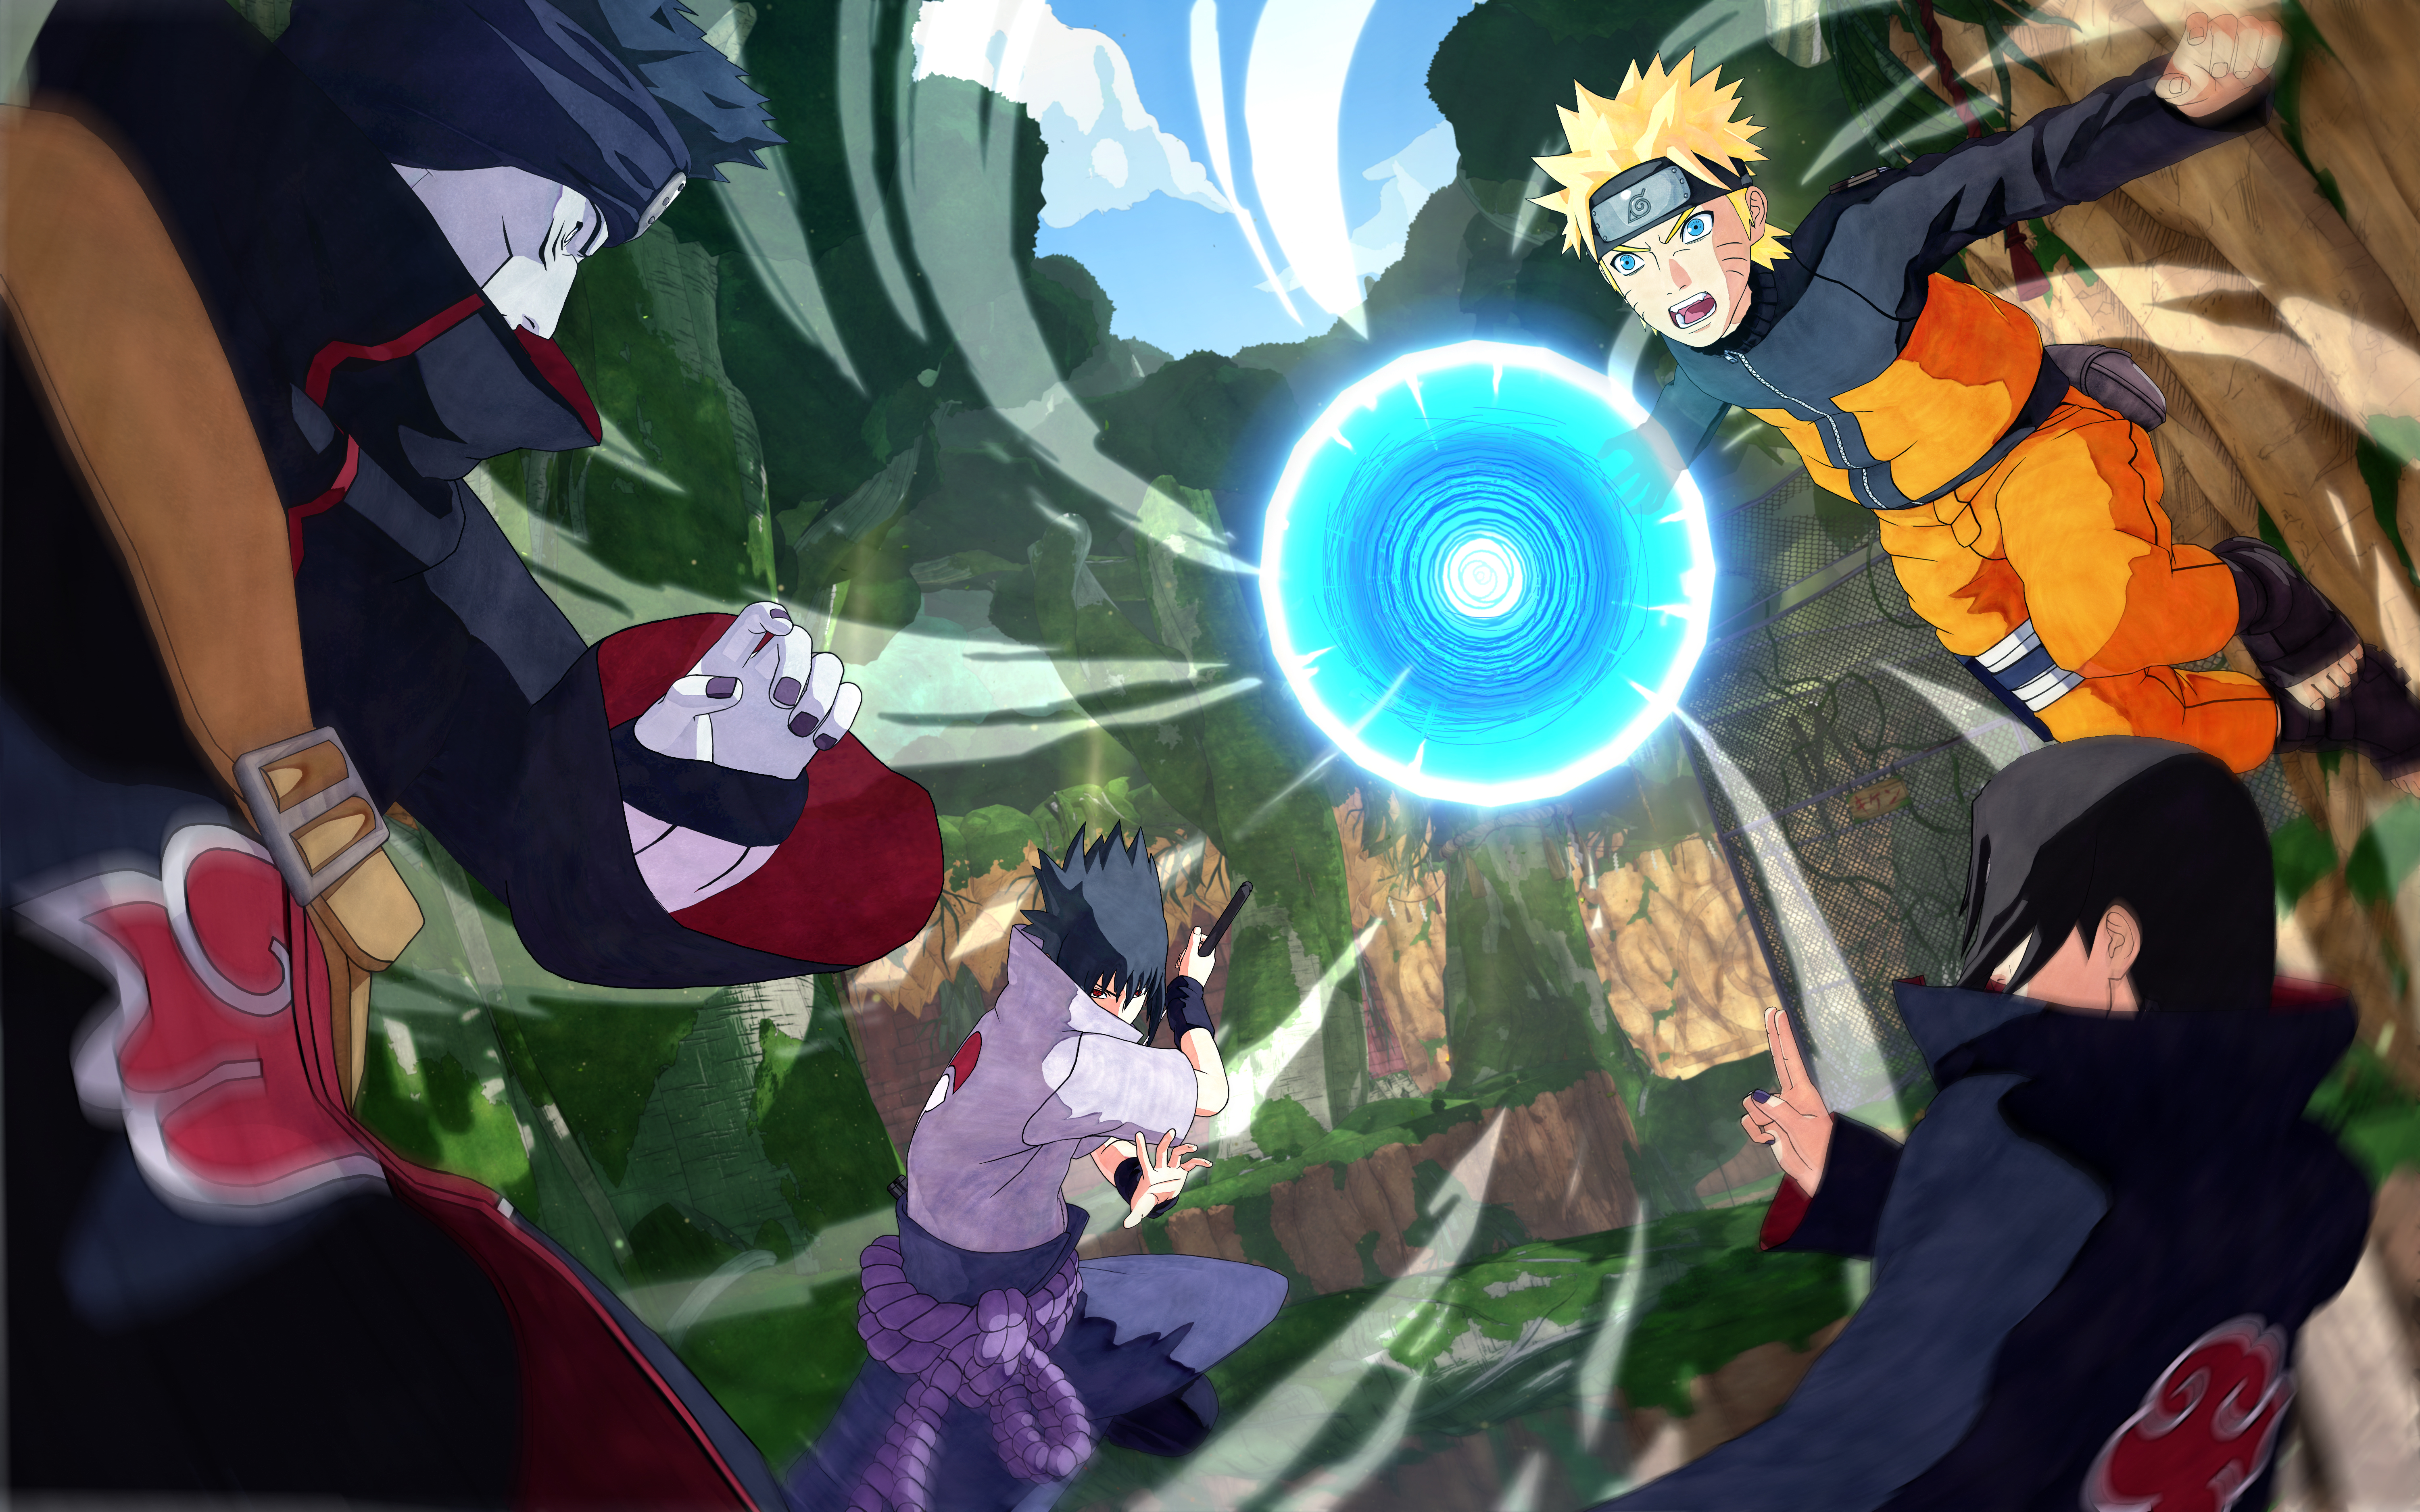 Naruto, NARUTO TO BORUTO: SHINOBI STRIKER, Bandai namco, Tan Grande y Jugando, Bandai, Namco, PlayStation 4, Xbox One, PC, Steam